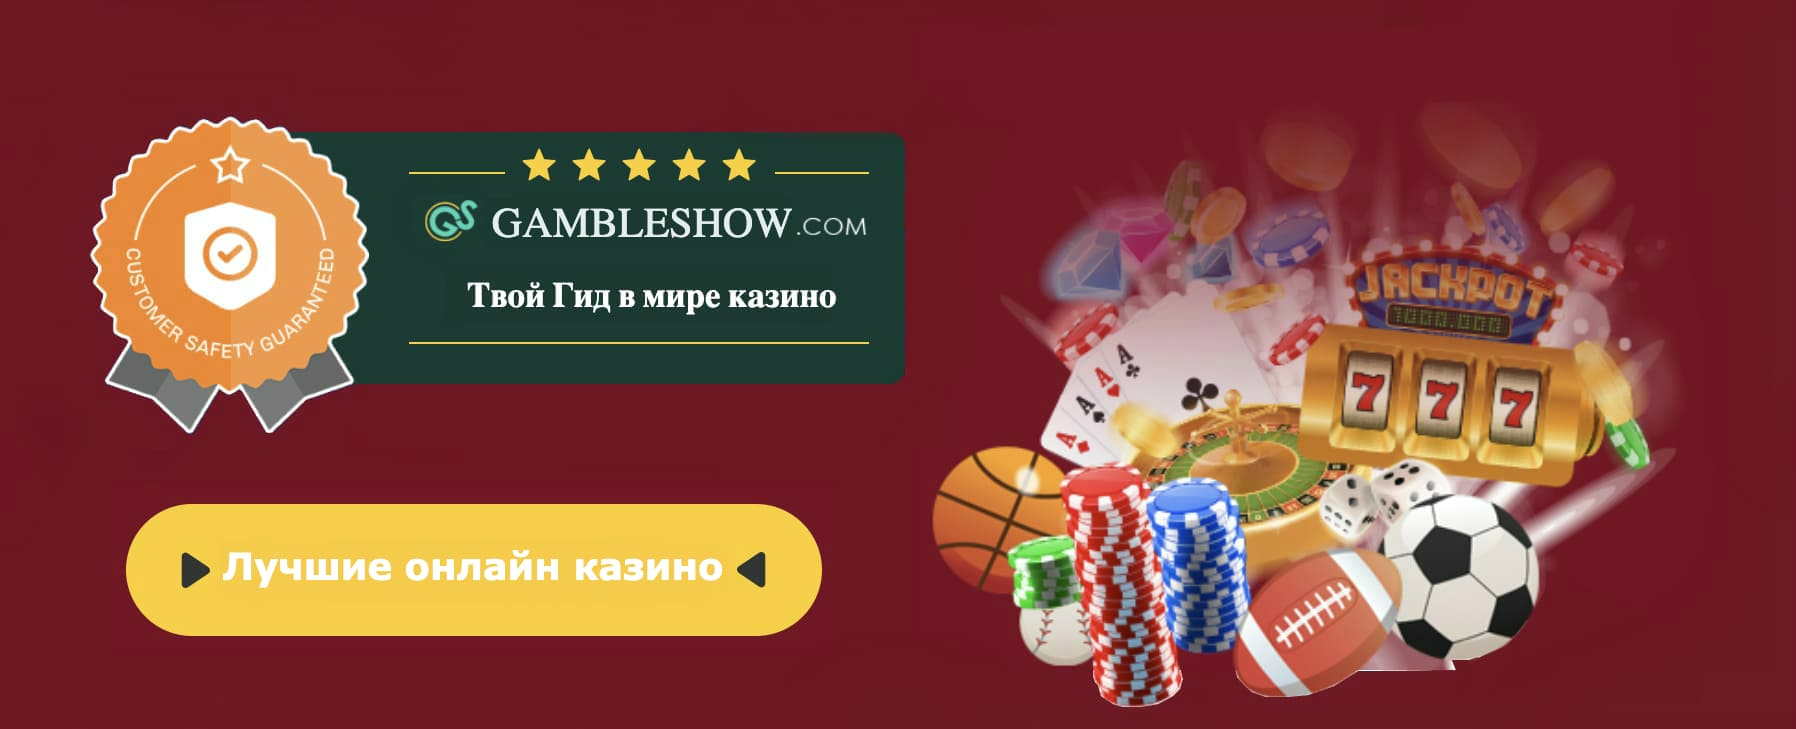 Casino tops online